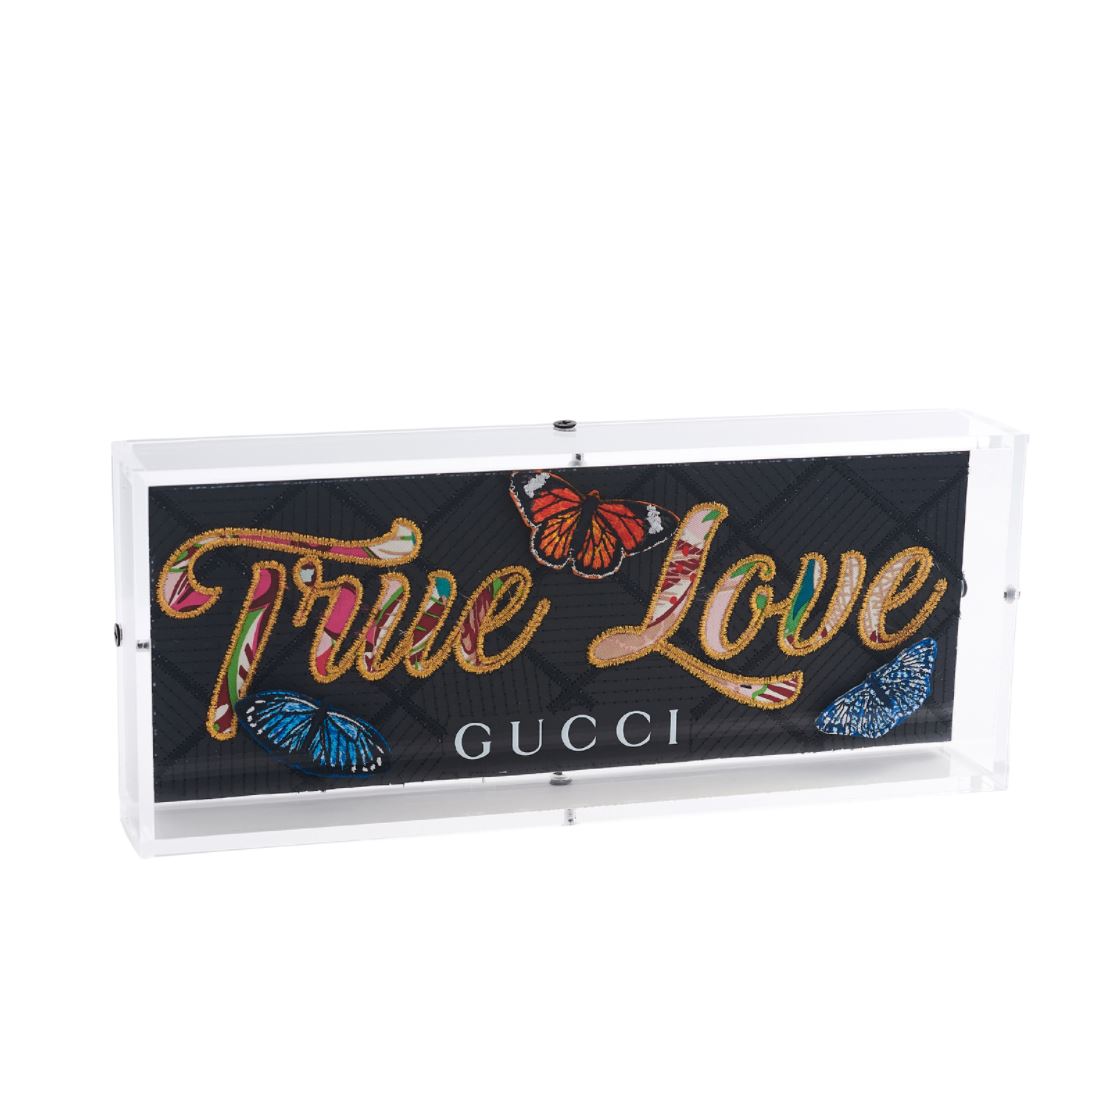 Gucci True Love Artwork Stephen WIlson 